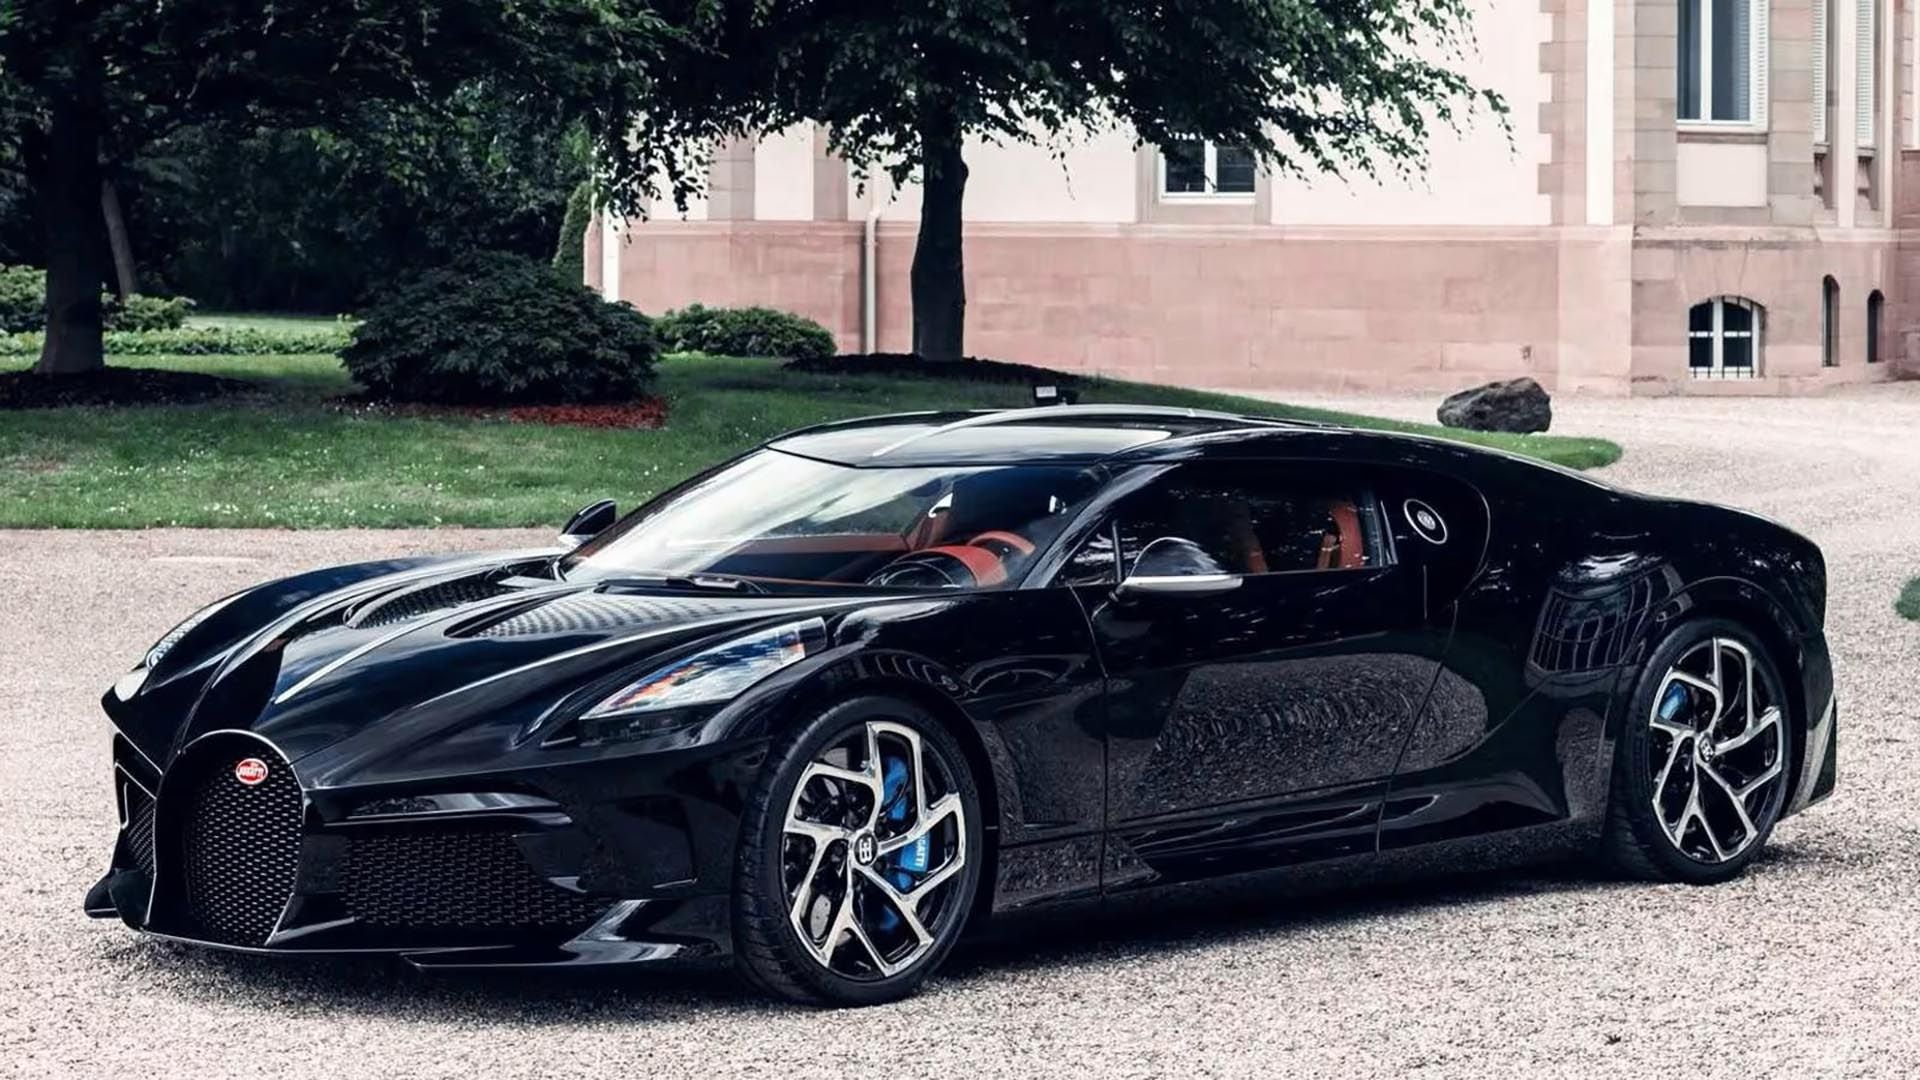 El Bugatti La Voiture Noire sólo tiene una unidad, que combina elegancia con alta performance al máximo nivel